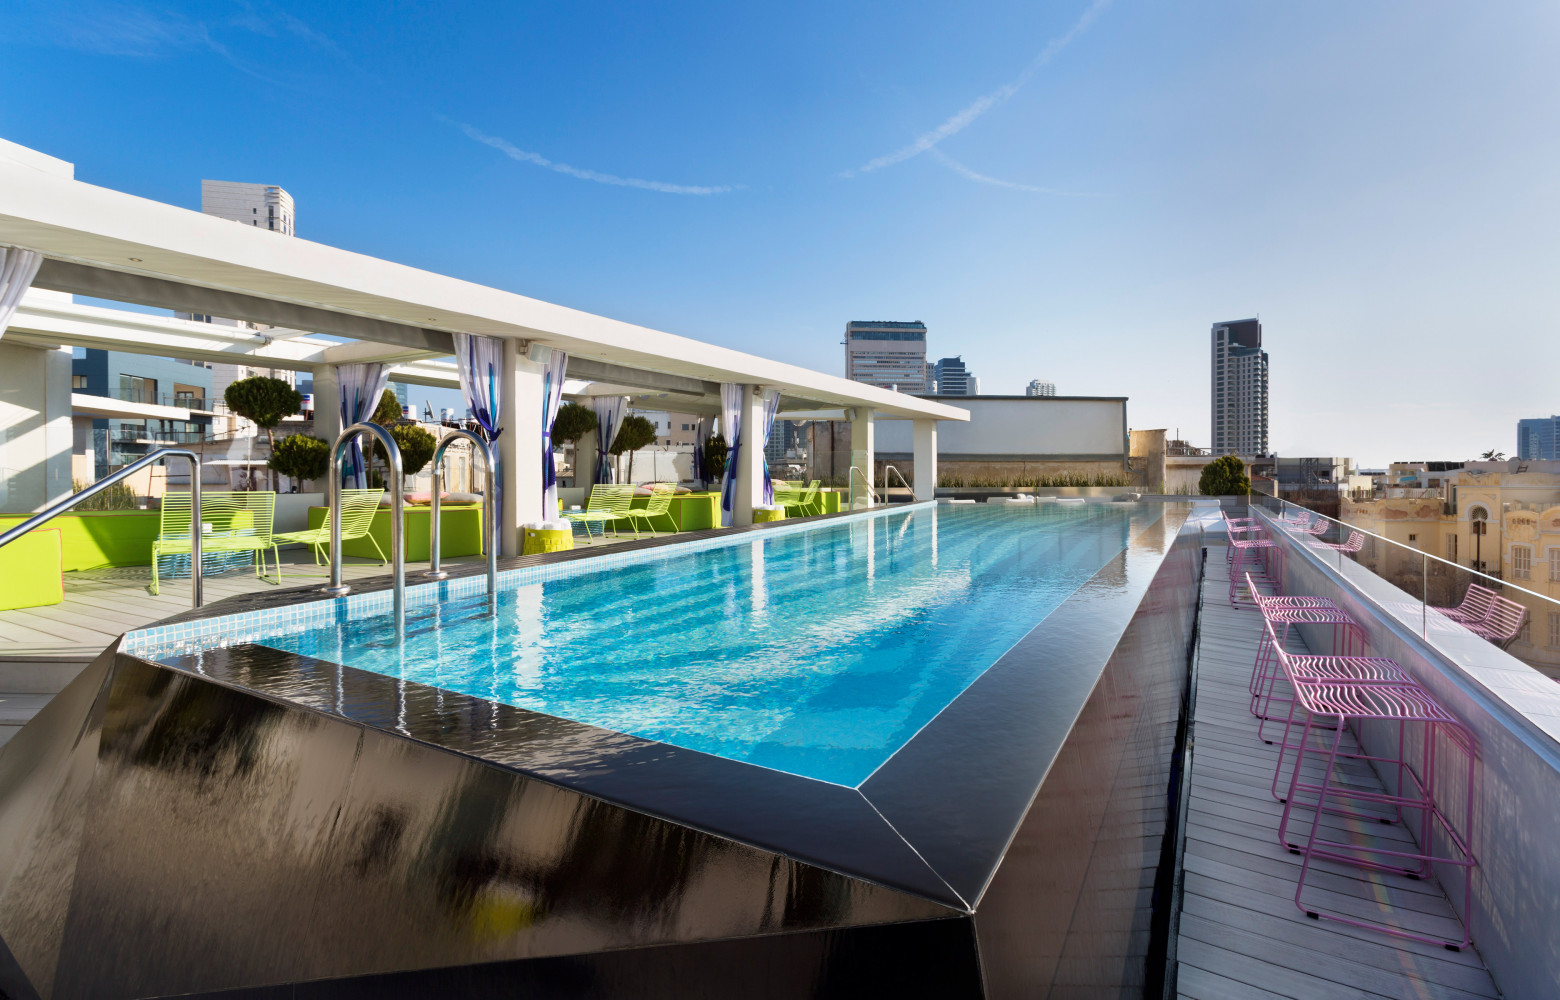 La terrasse panoramique de 600 m2 comprend une piscine à débordement avec vue sur la ville, autour...